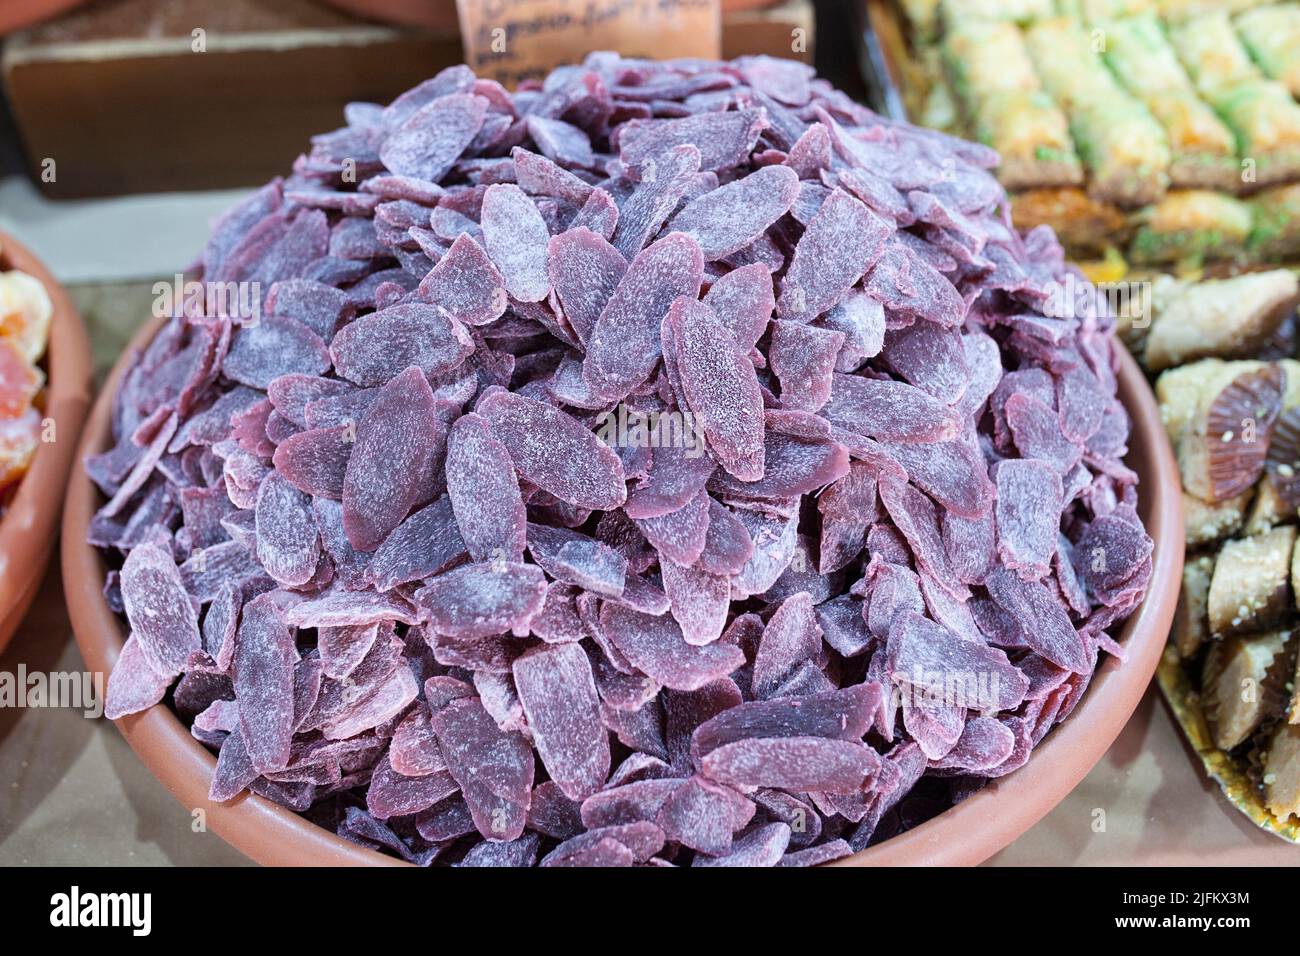 Piña púrpura deshidratada. Los cortes se muestran en el puesto del mercado callejero. Foto de stock